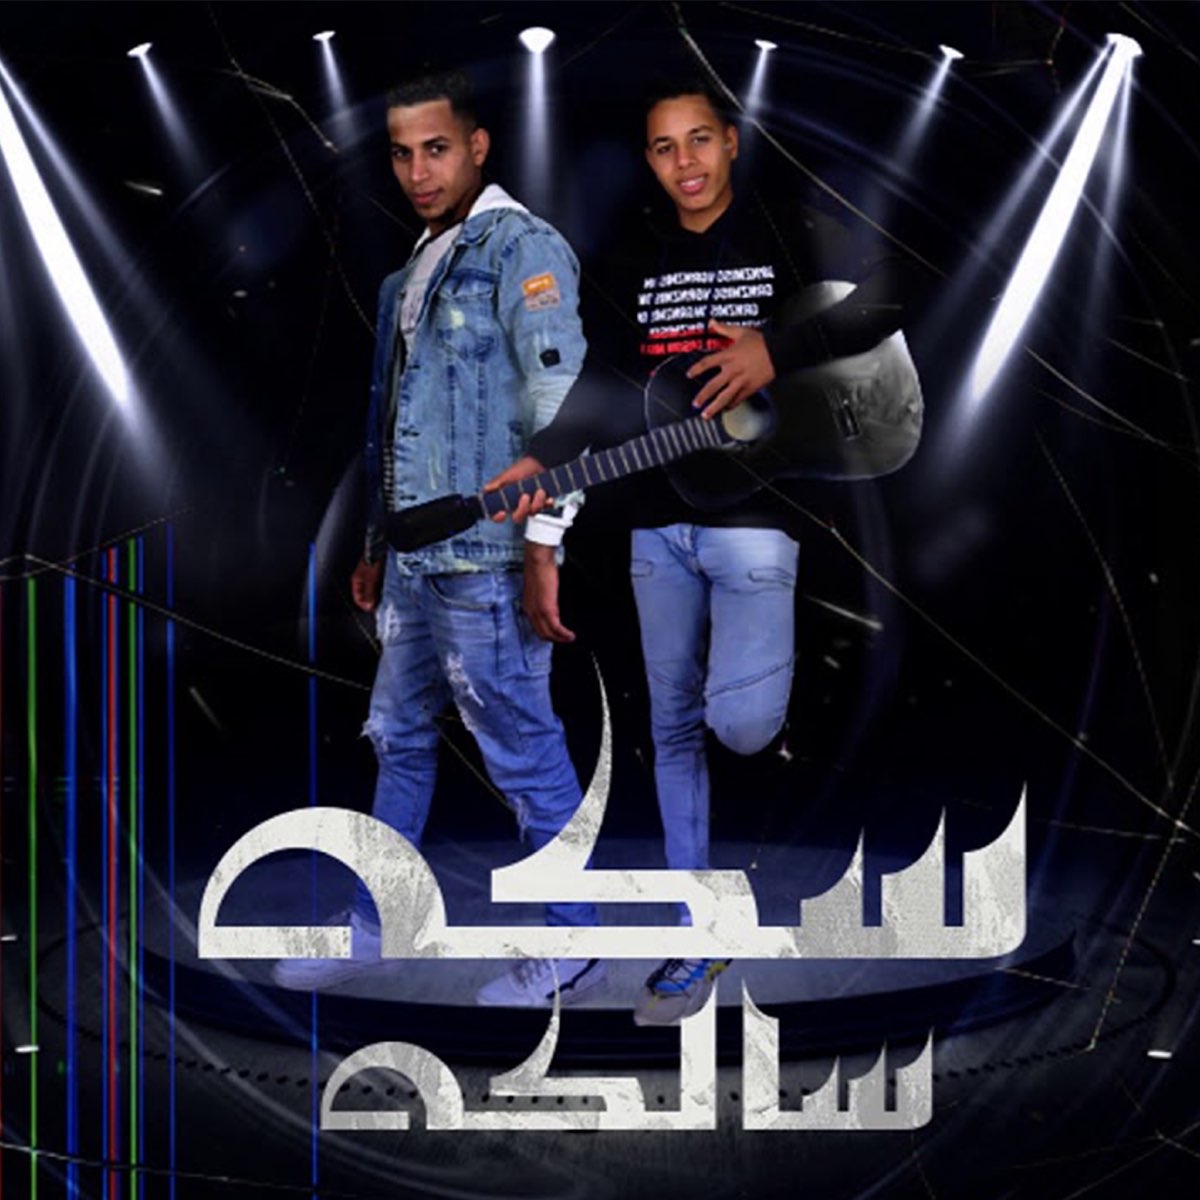 مهرجان سكة سالكة - Single - Album by احمد السويسي & محمود العمدة - Apple  Music